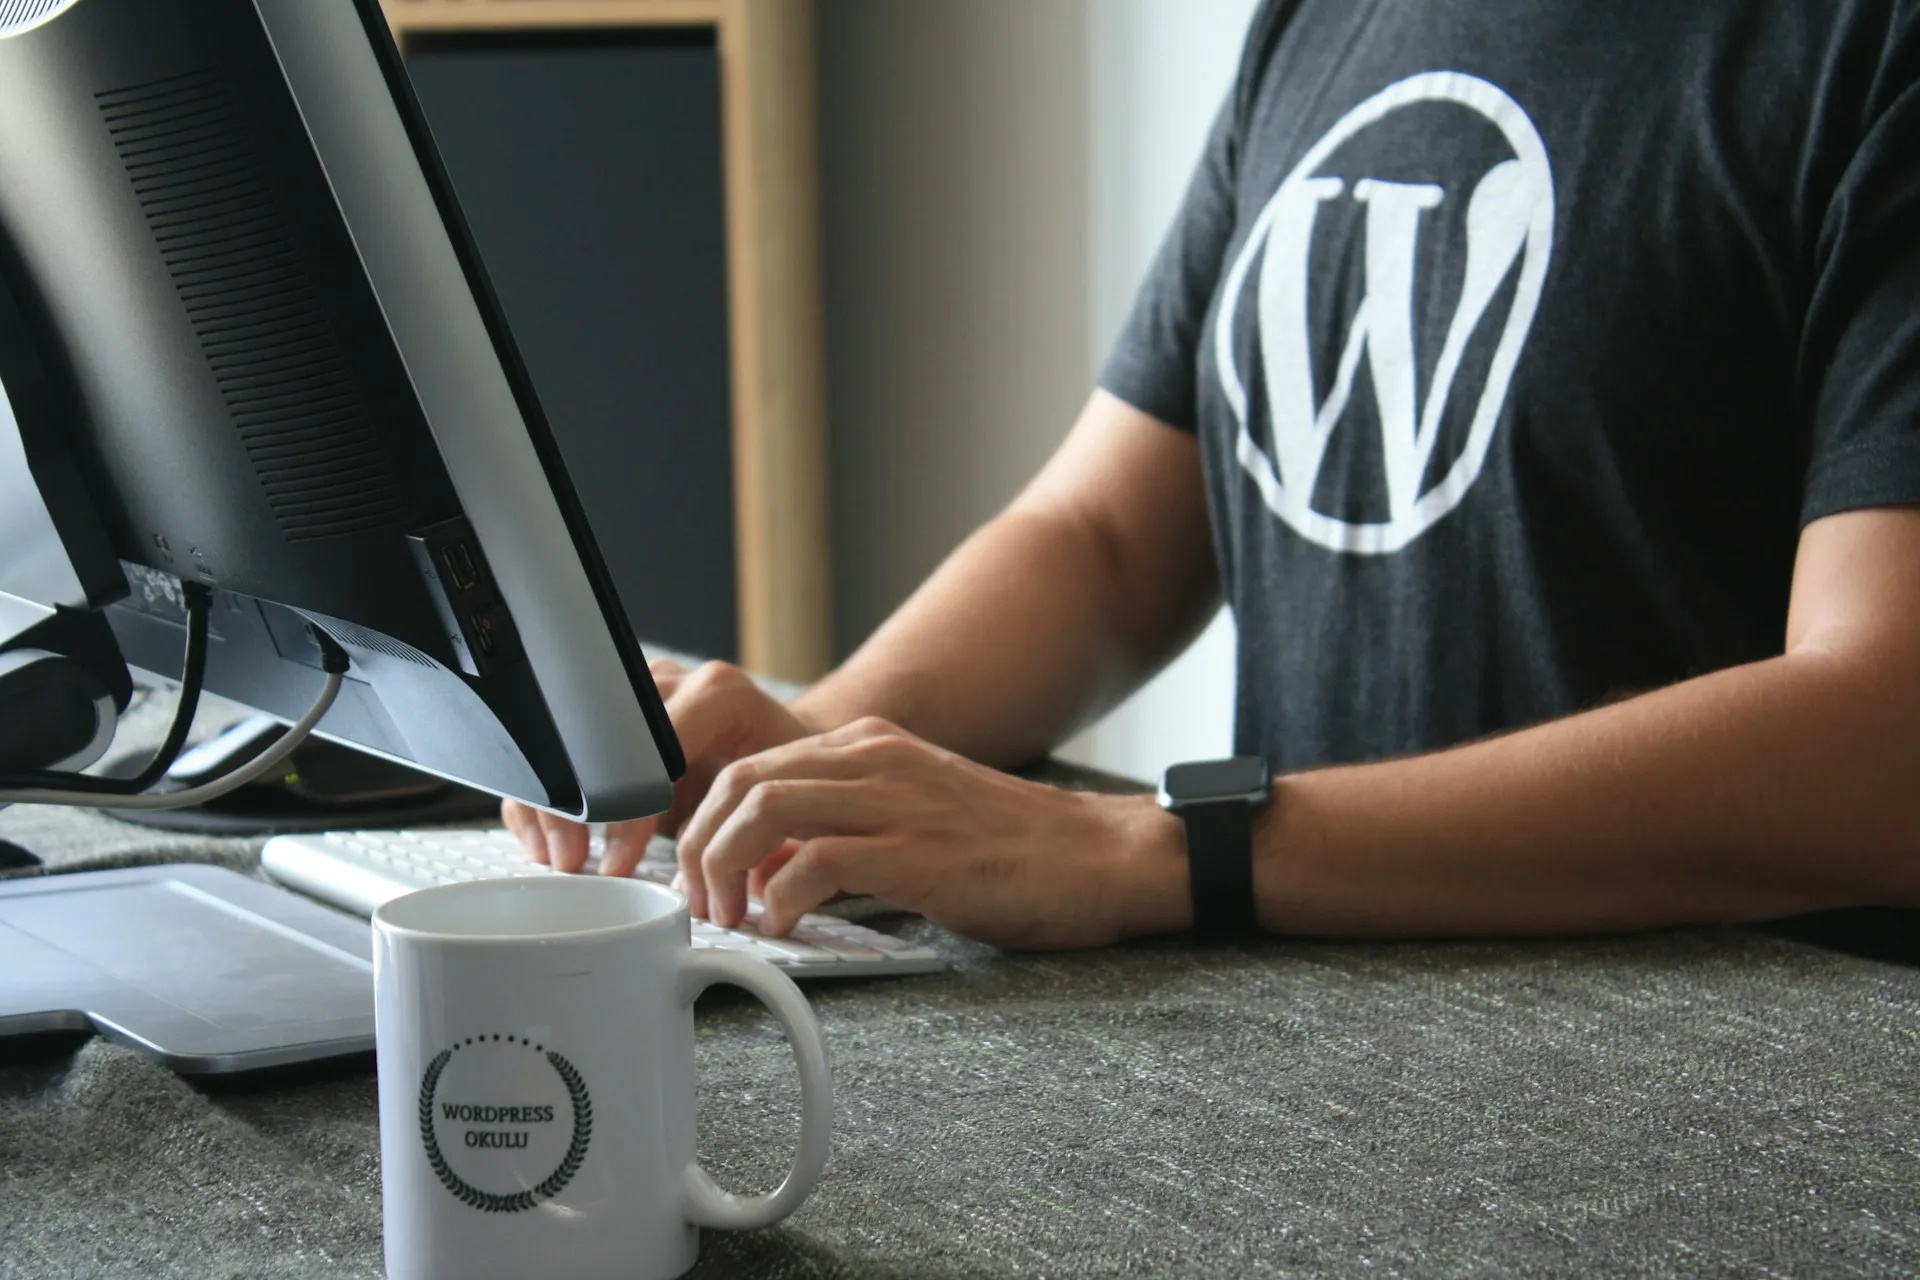 Ein Mann sitzt an einem Schreibtisch und tippt auf einer Computertastatur. Er trägt ein schwarzes T-Shirt mit dem WordPress-Logo. Auf dem Schreibtisch steht eine weiße Tasse mit der Aufschrift WordPress Entwickler